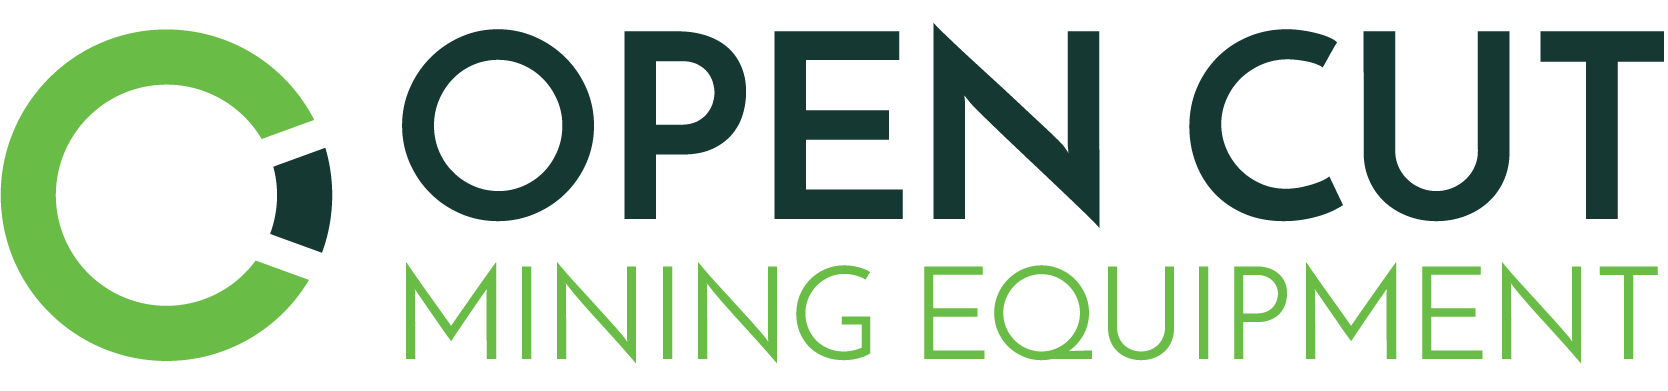 Open Cut Mining Equipment Logo